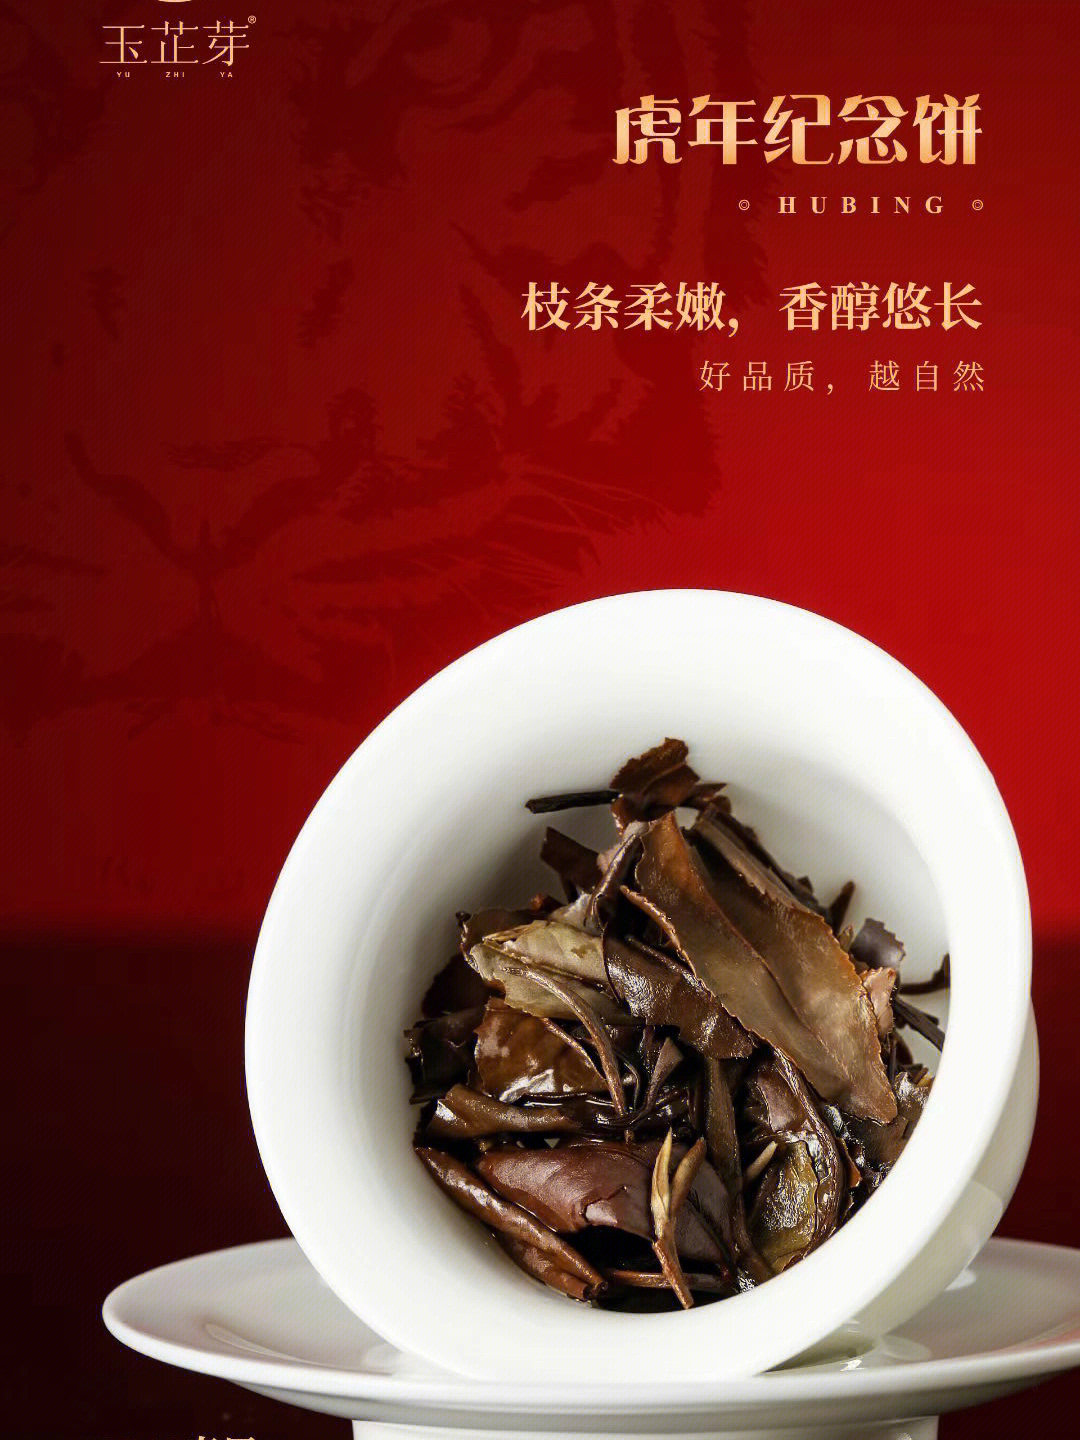 福鼎白茶宣传册图片